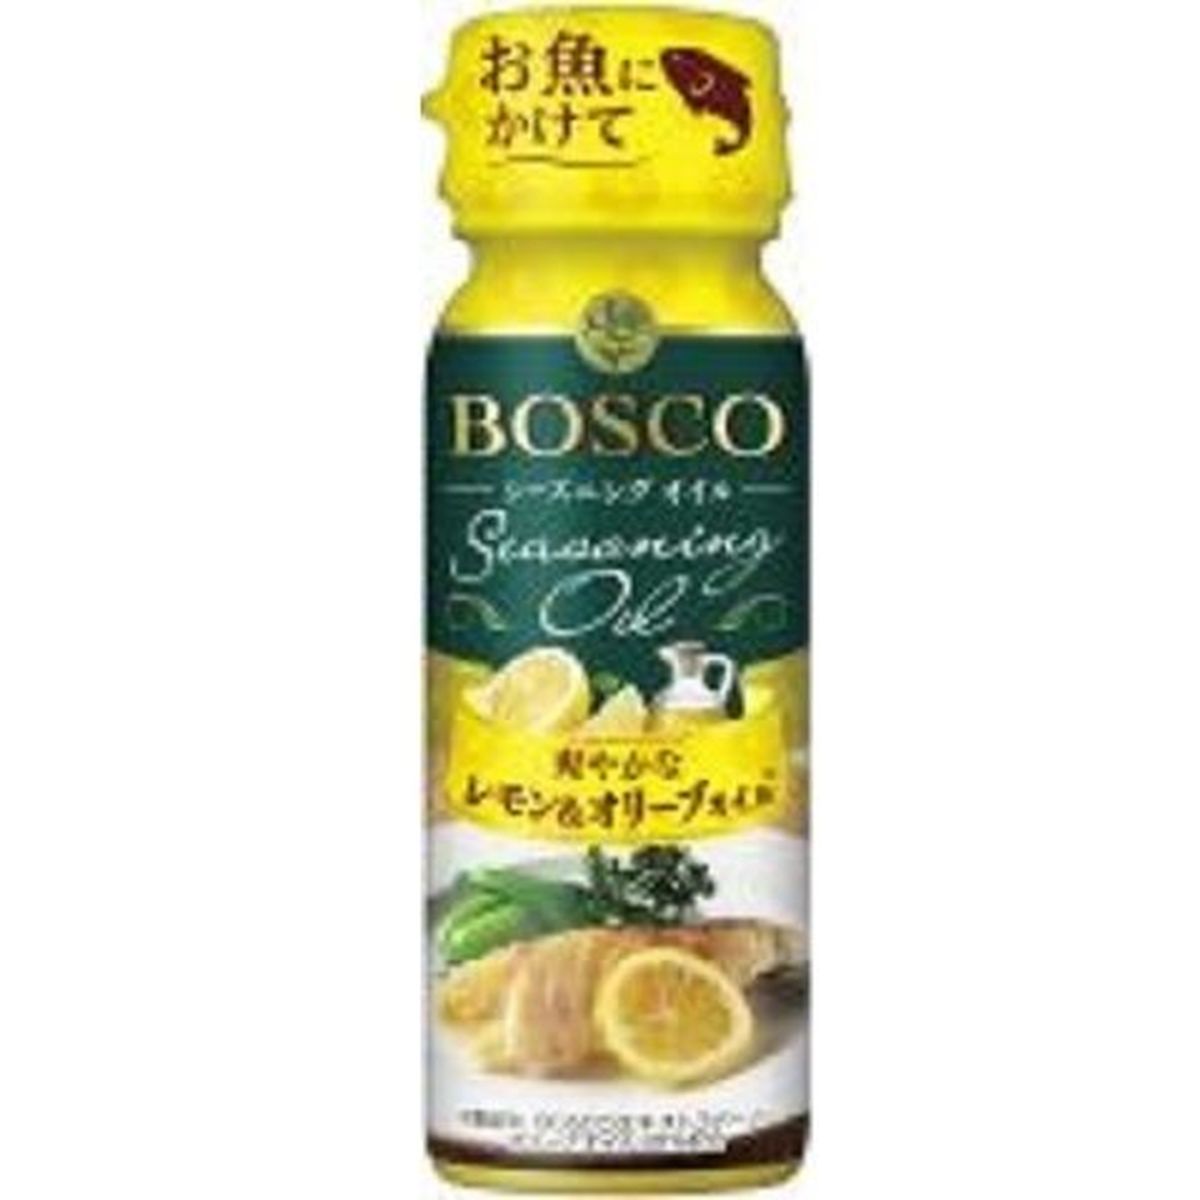 【15個入リ】ボスコ シーズニングオイル レモンオリーブオイル 90g